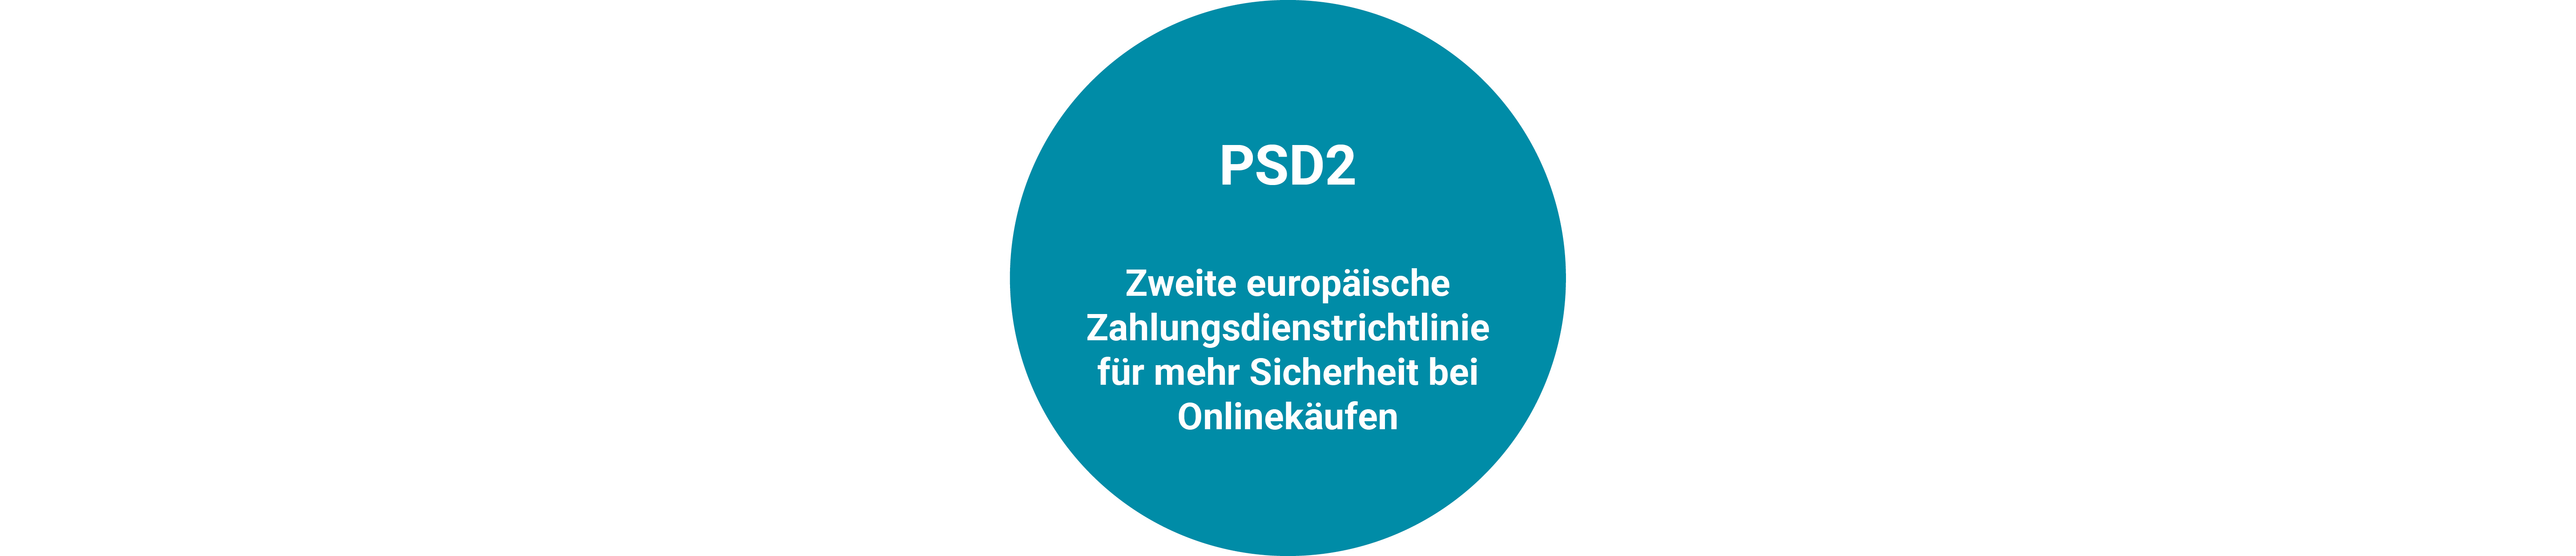 Blog_DE_3D-Secure-PSD2-Kreis